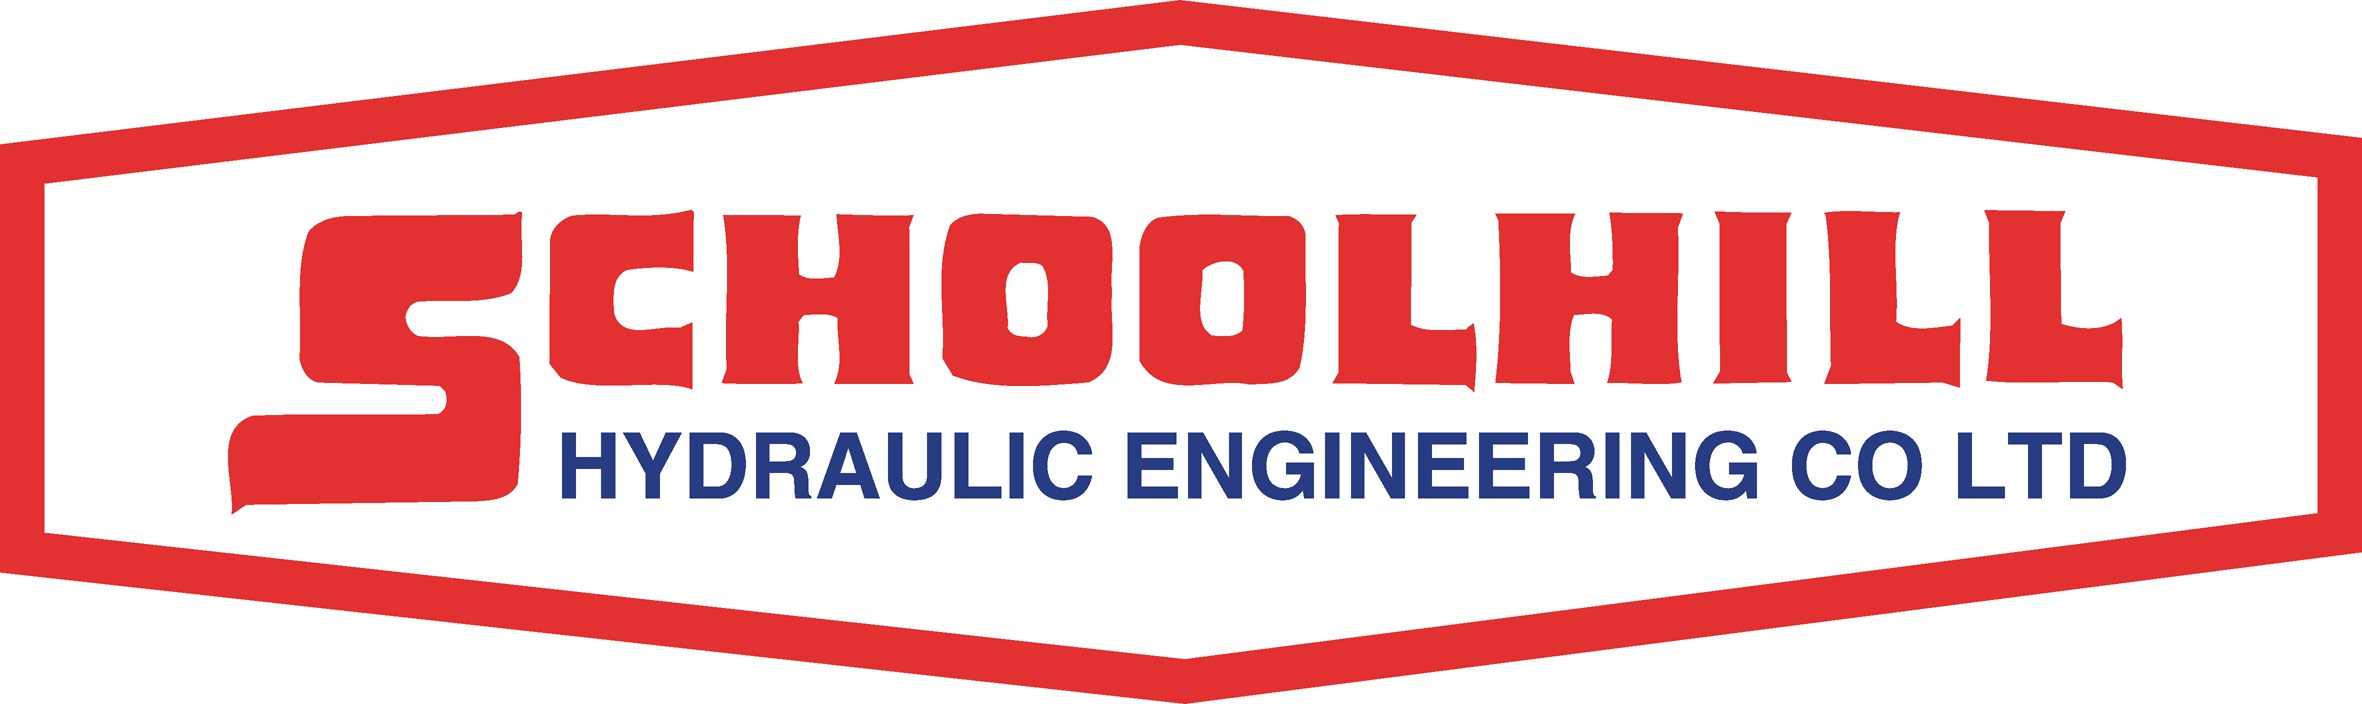 Schoolhill Hydraulic Engineering Co Ltd